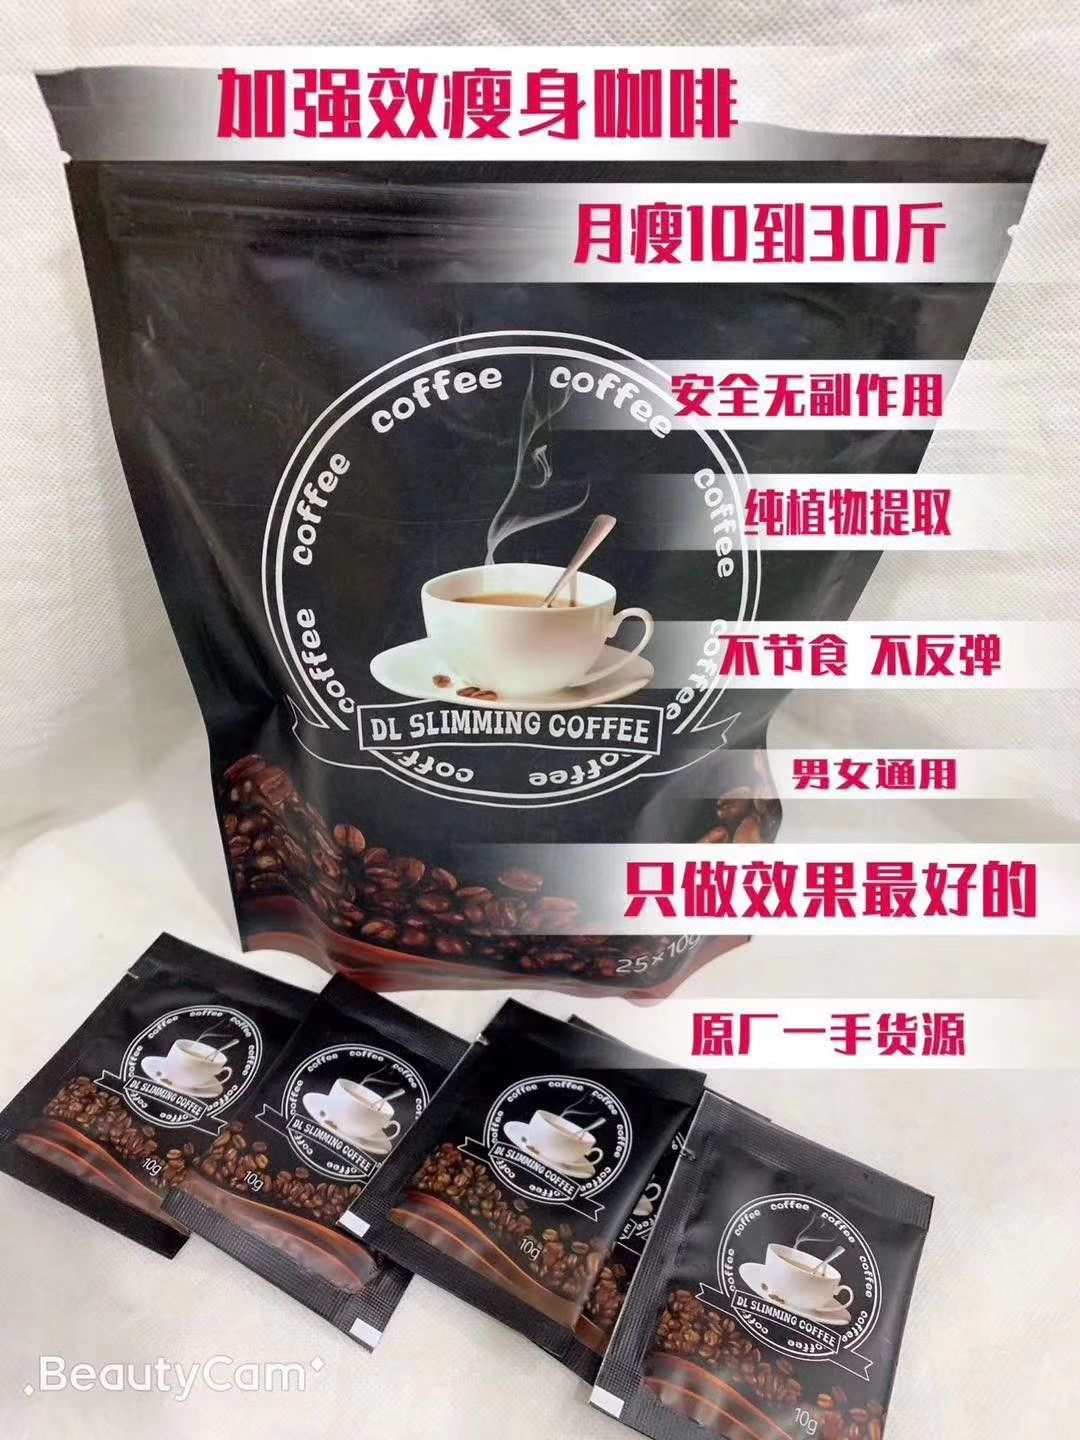 咖啡减肥微商_减肥咖啡被曝光_微商最近火的减肥咖啡副作用